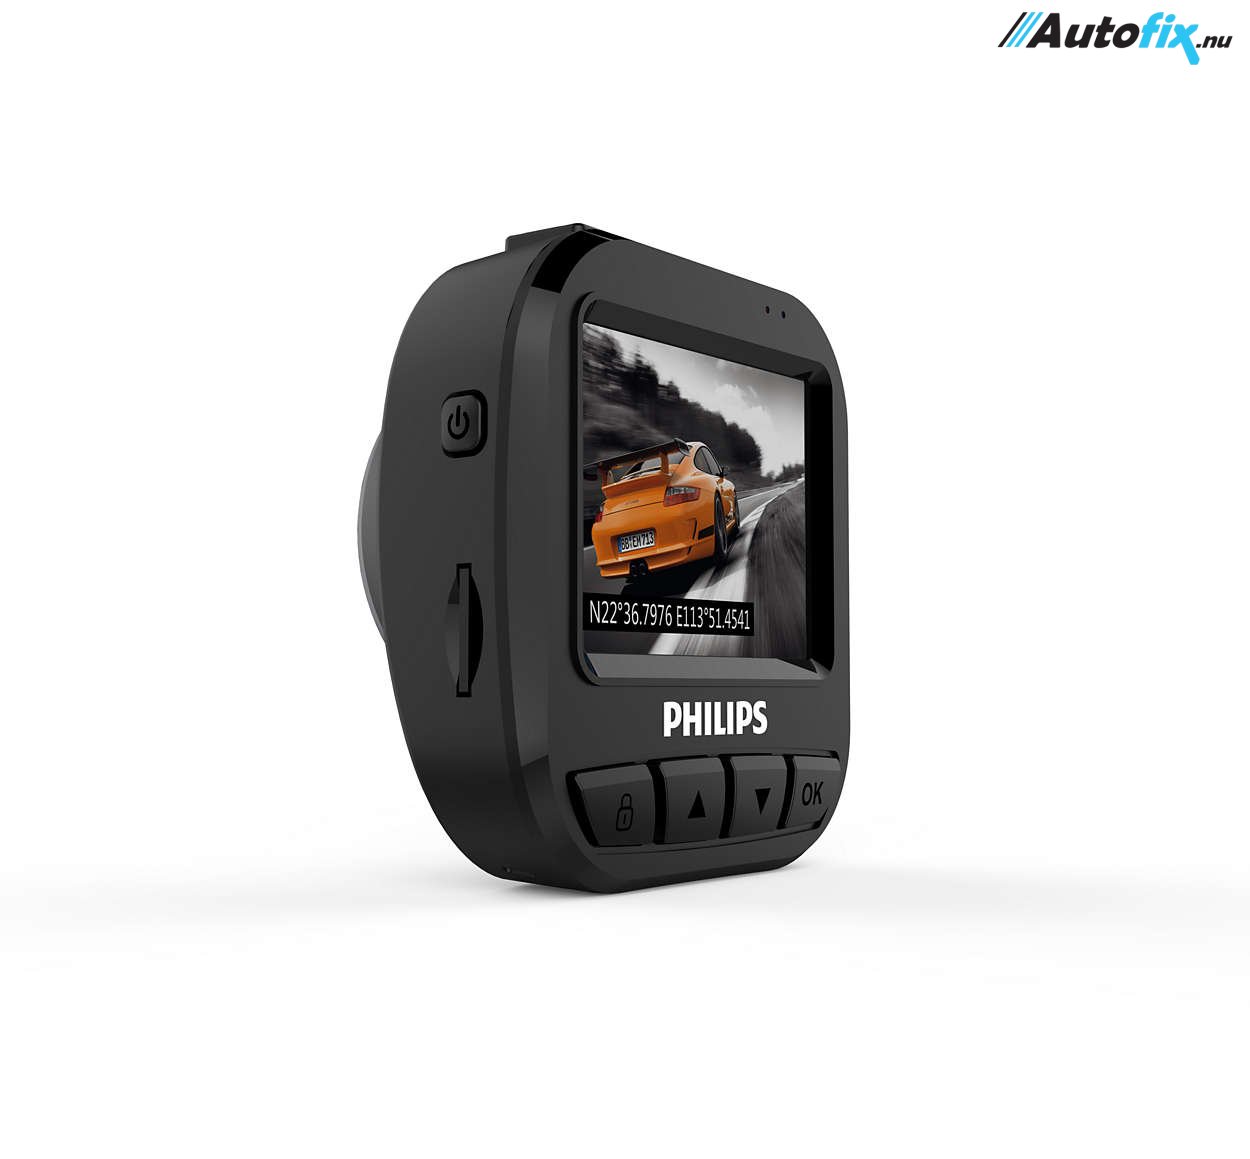 Philips GoSure ADR620 Dashcam - Full HD 1080P Dash - Autofix.nu